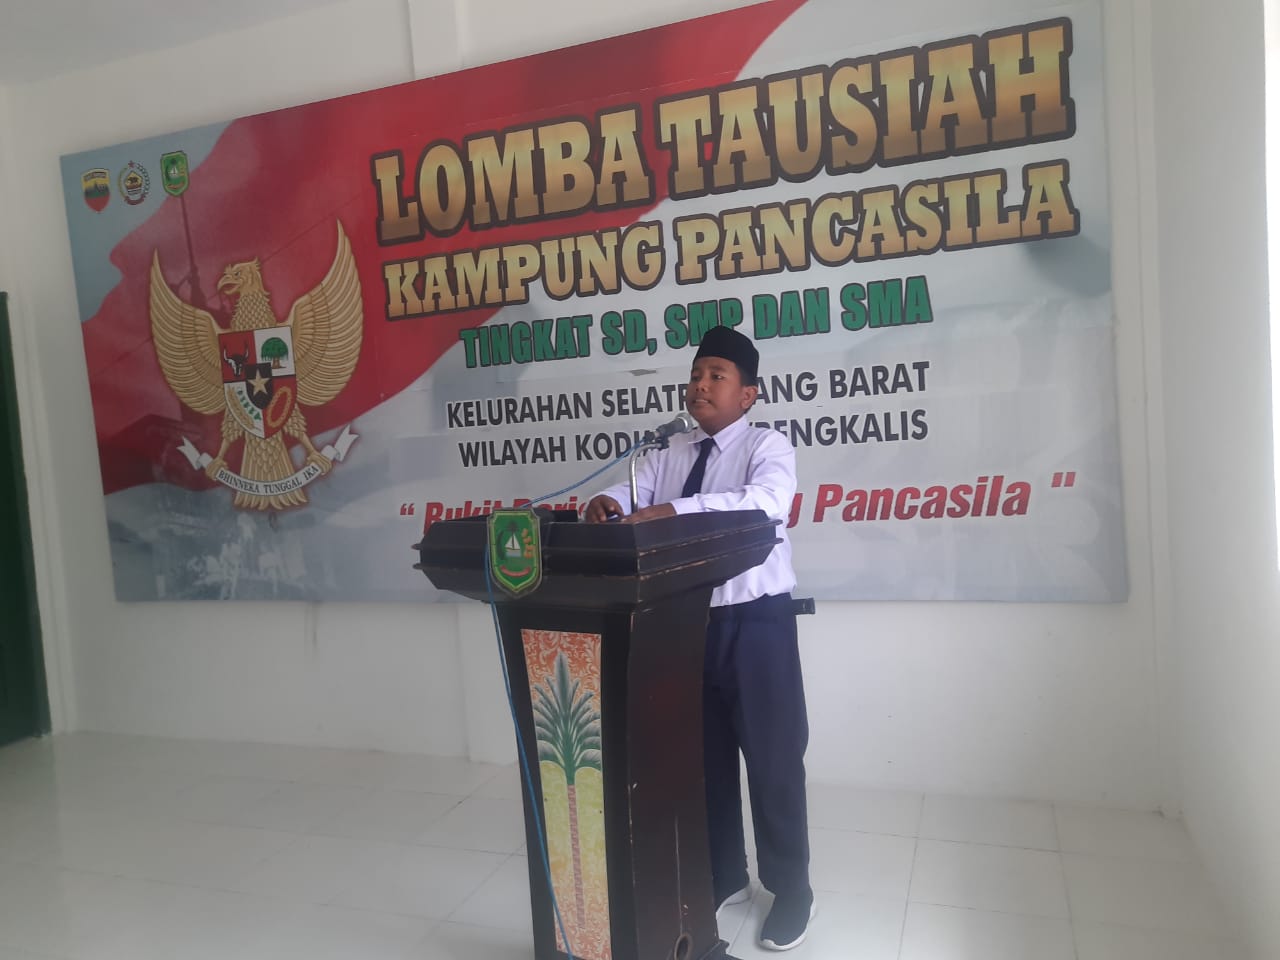 Pemberdayaan Kampung Pancasila, TNI Gelar Lomba Tausiyah Meranti Tingkat Siswa